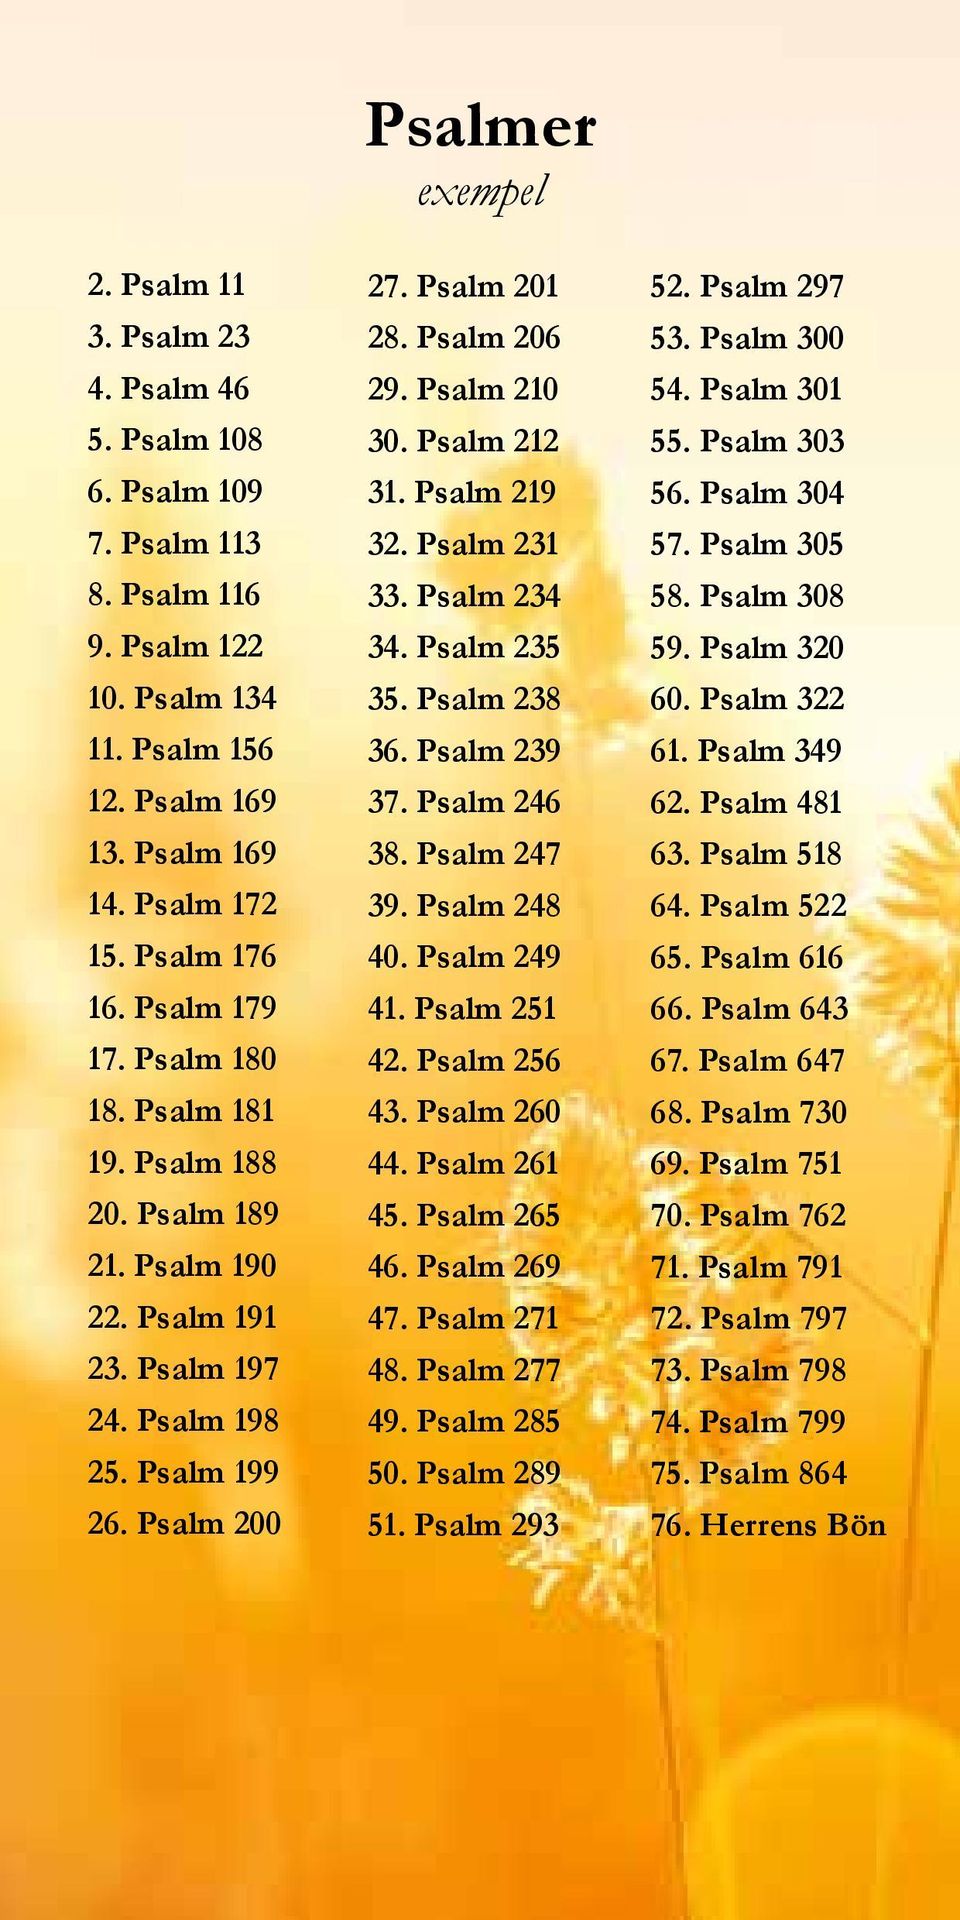 Psalm 210 30. Psalm 212 31. Psalm 219 32. Psalm 231 33. Psalm 234 34. Psalm 235 35. Psalm 238 36. Psalm 239 37. Psalm 246 38. Psalm 247 39. Psalm 248 40. Psalm 249 41. Psalm 251 42. Psalm 256 43.